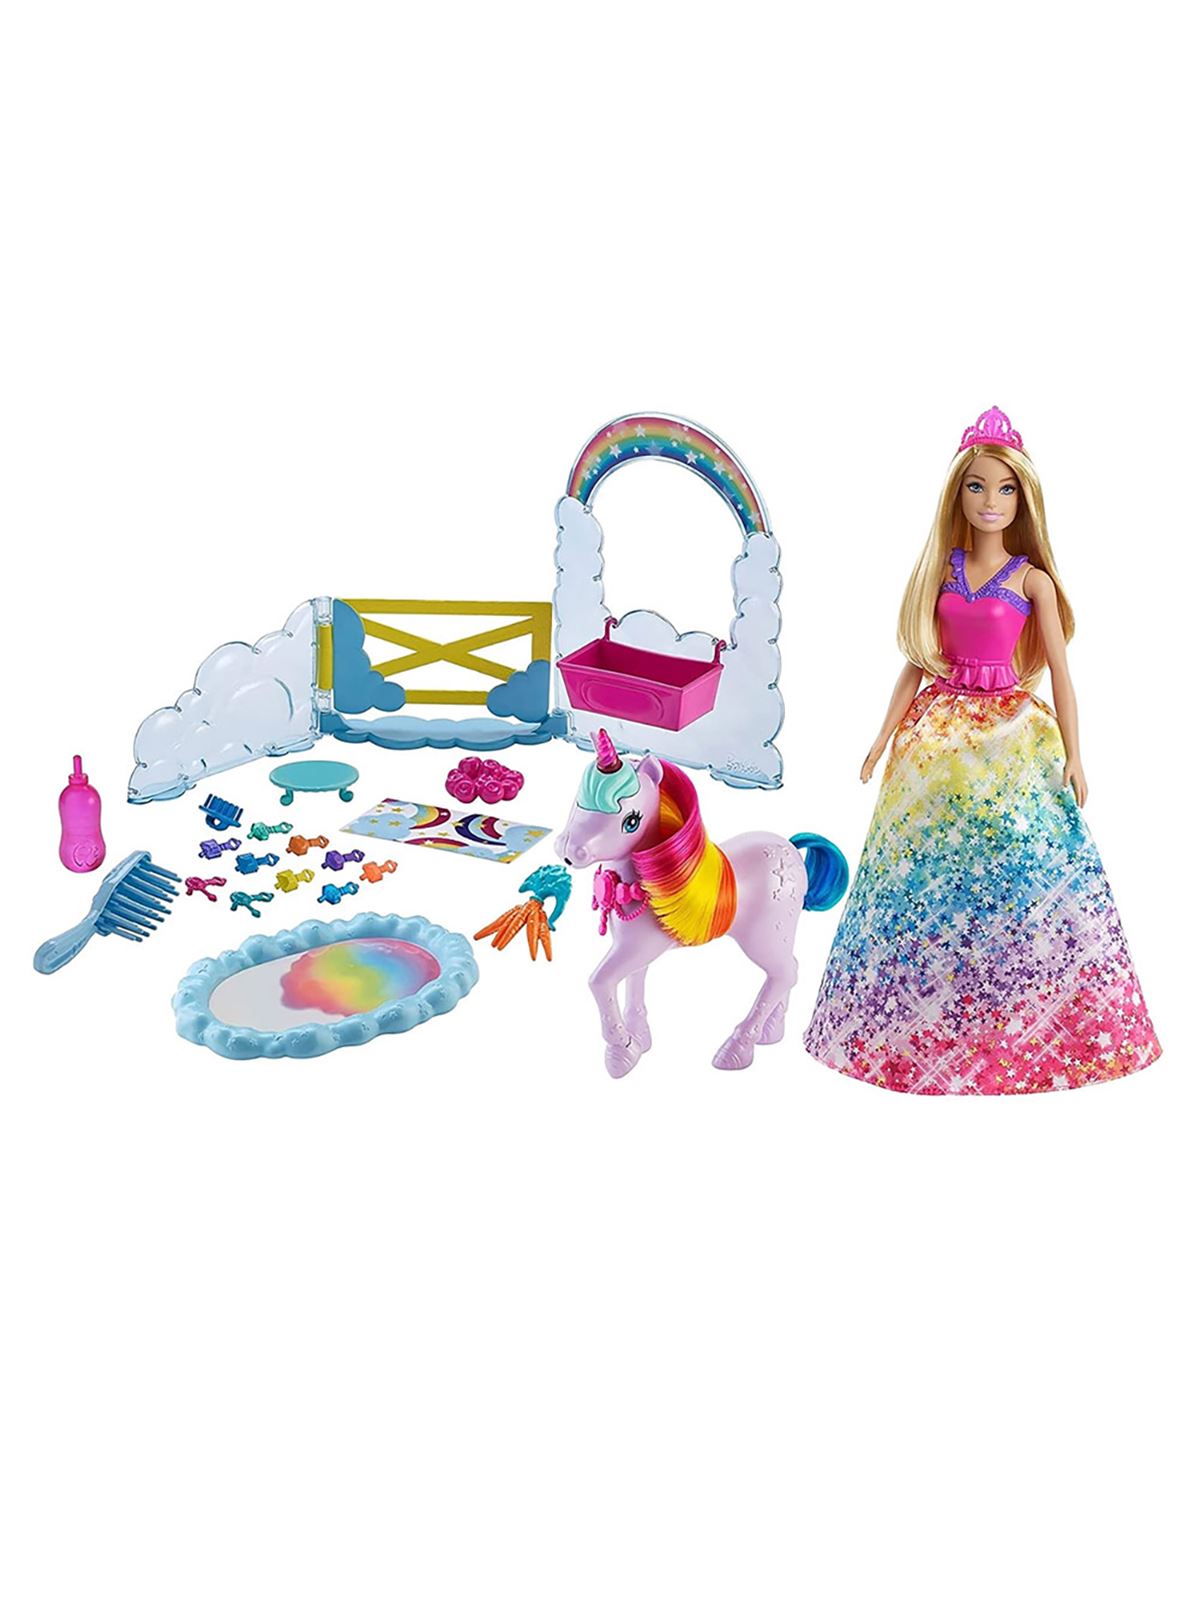 Barbie Dreamtopia Bebek Ve Tek Boynuzlu At Oyun Seti